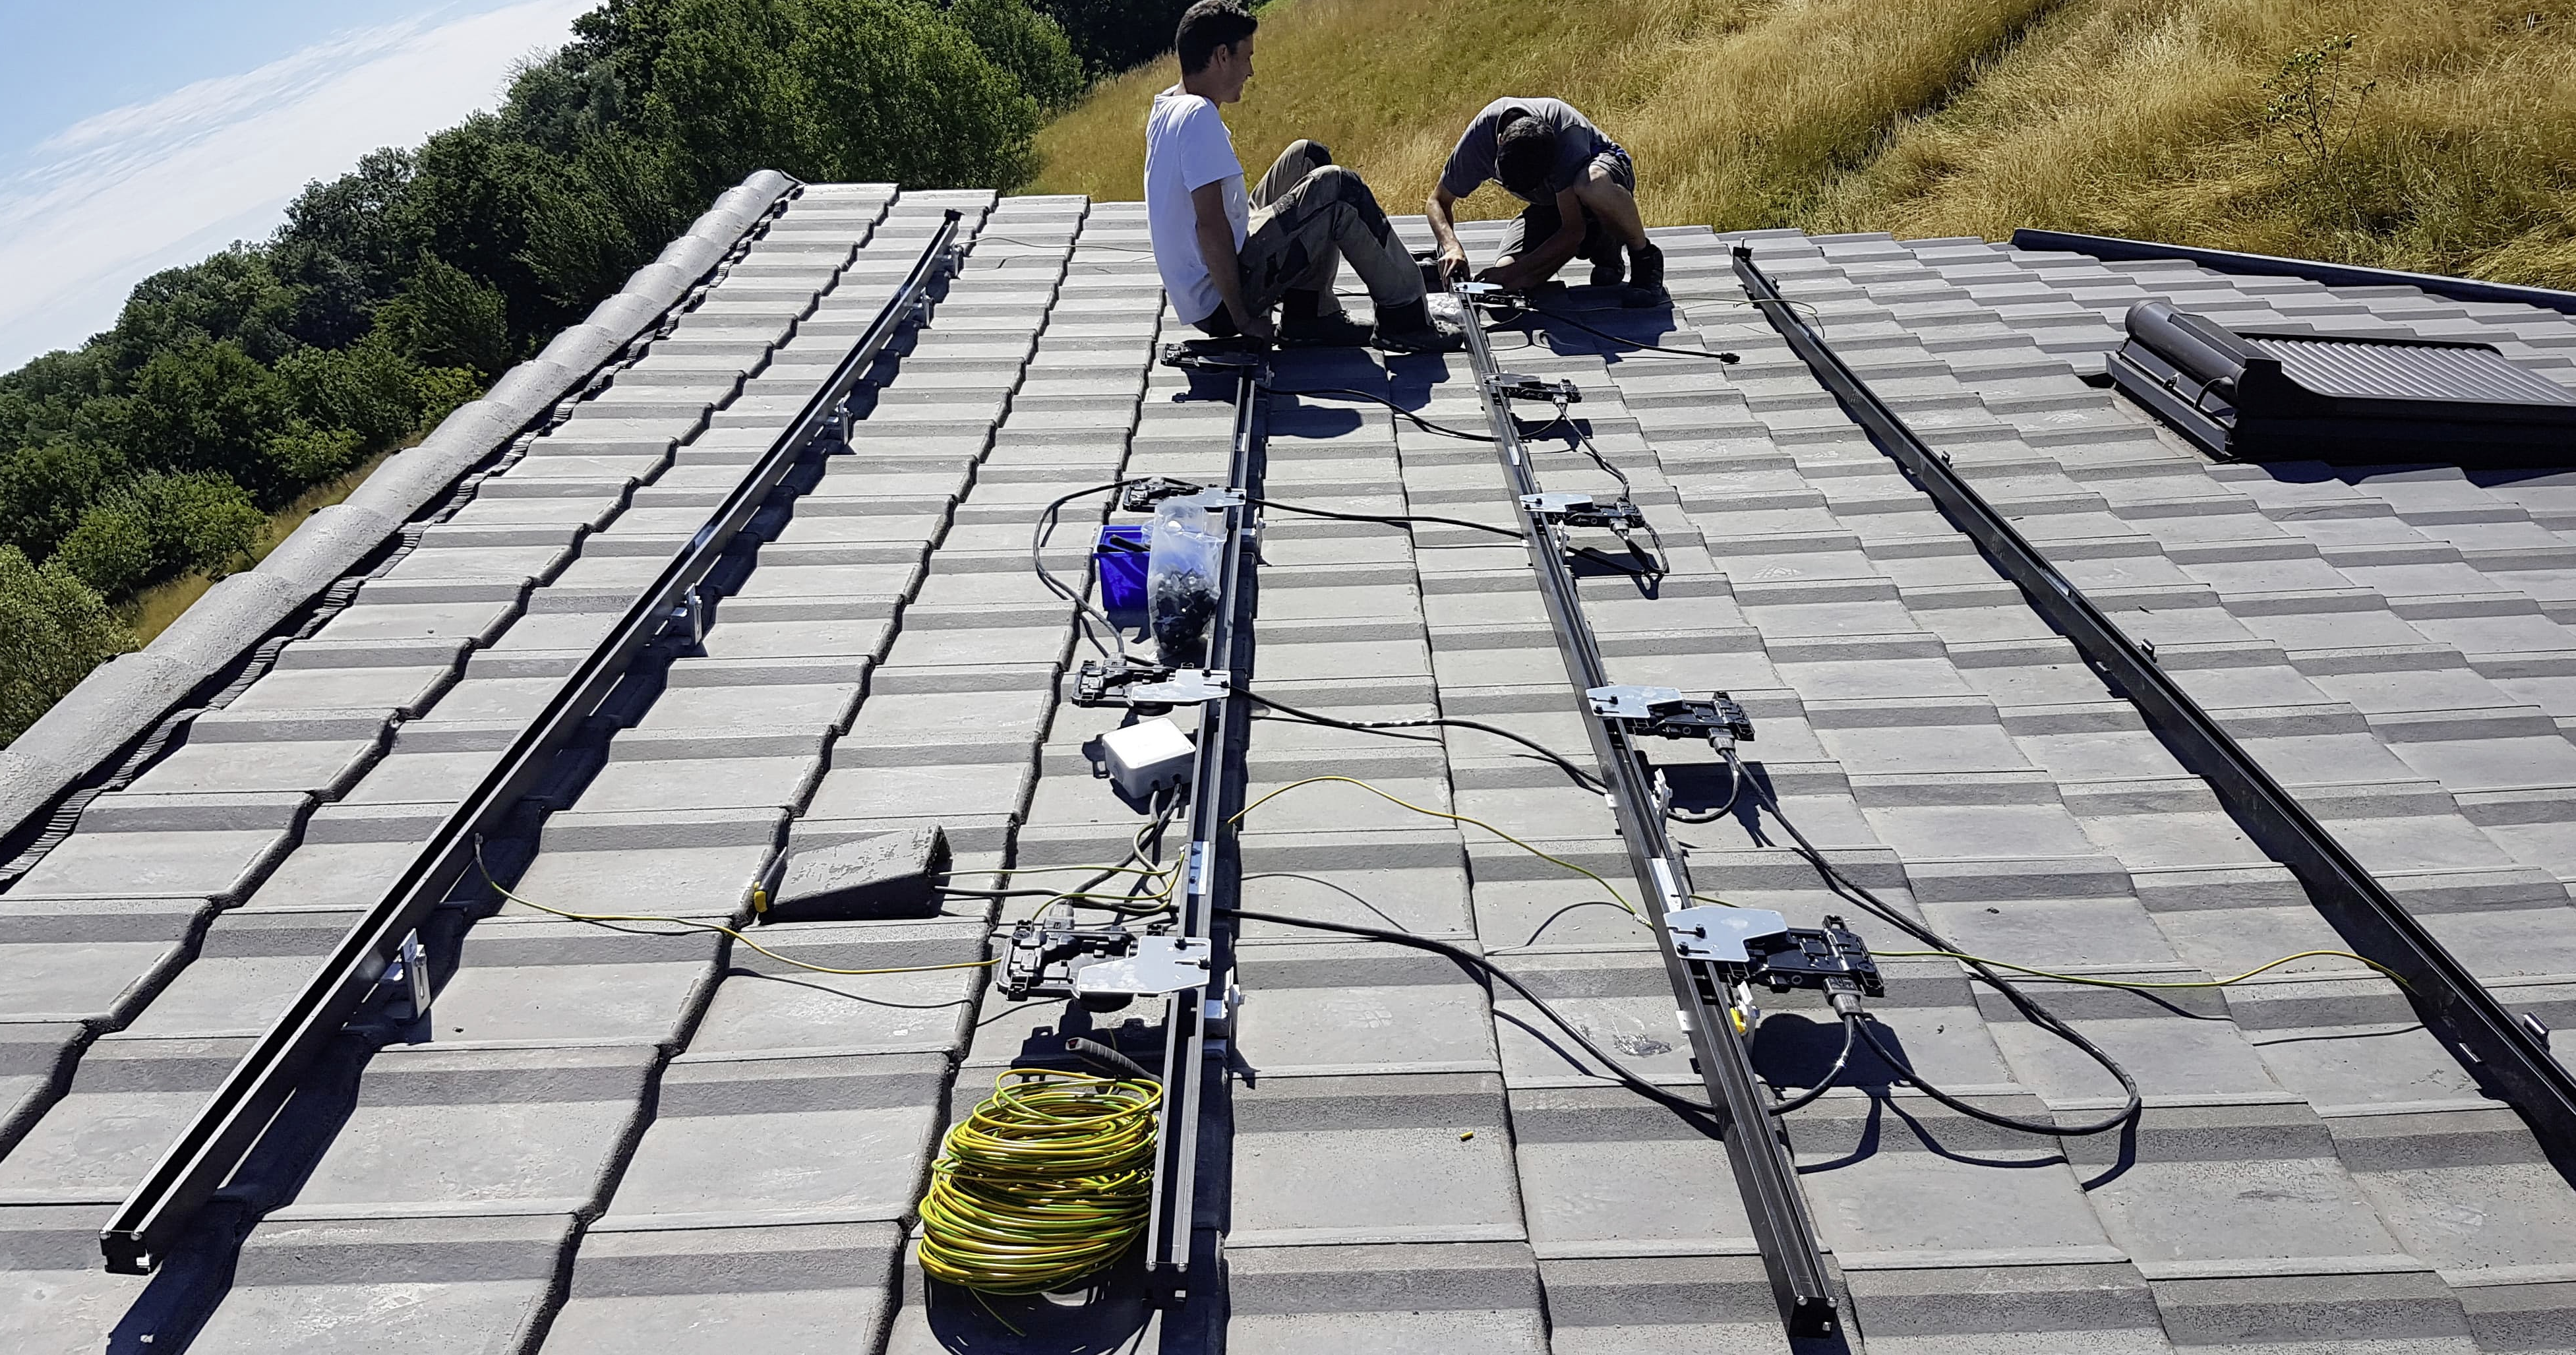 Pendant l'installation des panneaux photovoltaïques sur le toit de la maison.